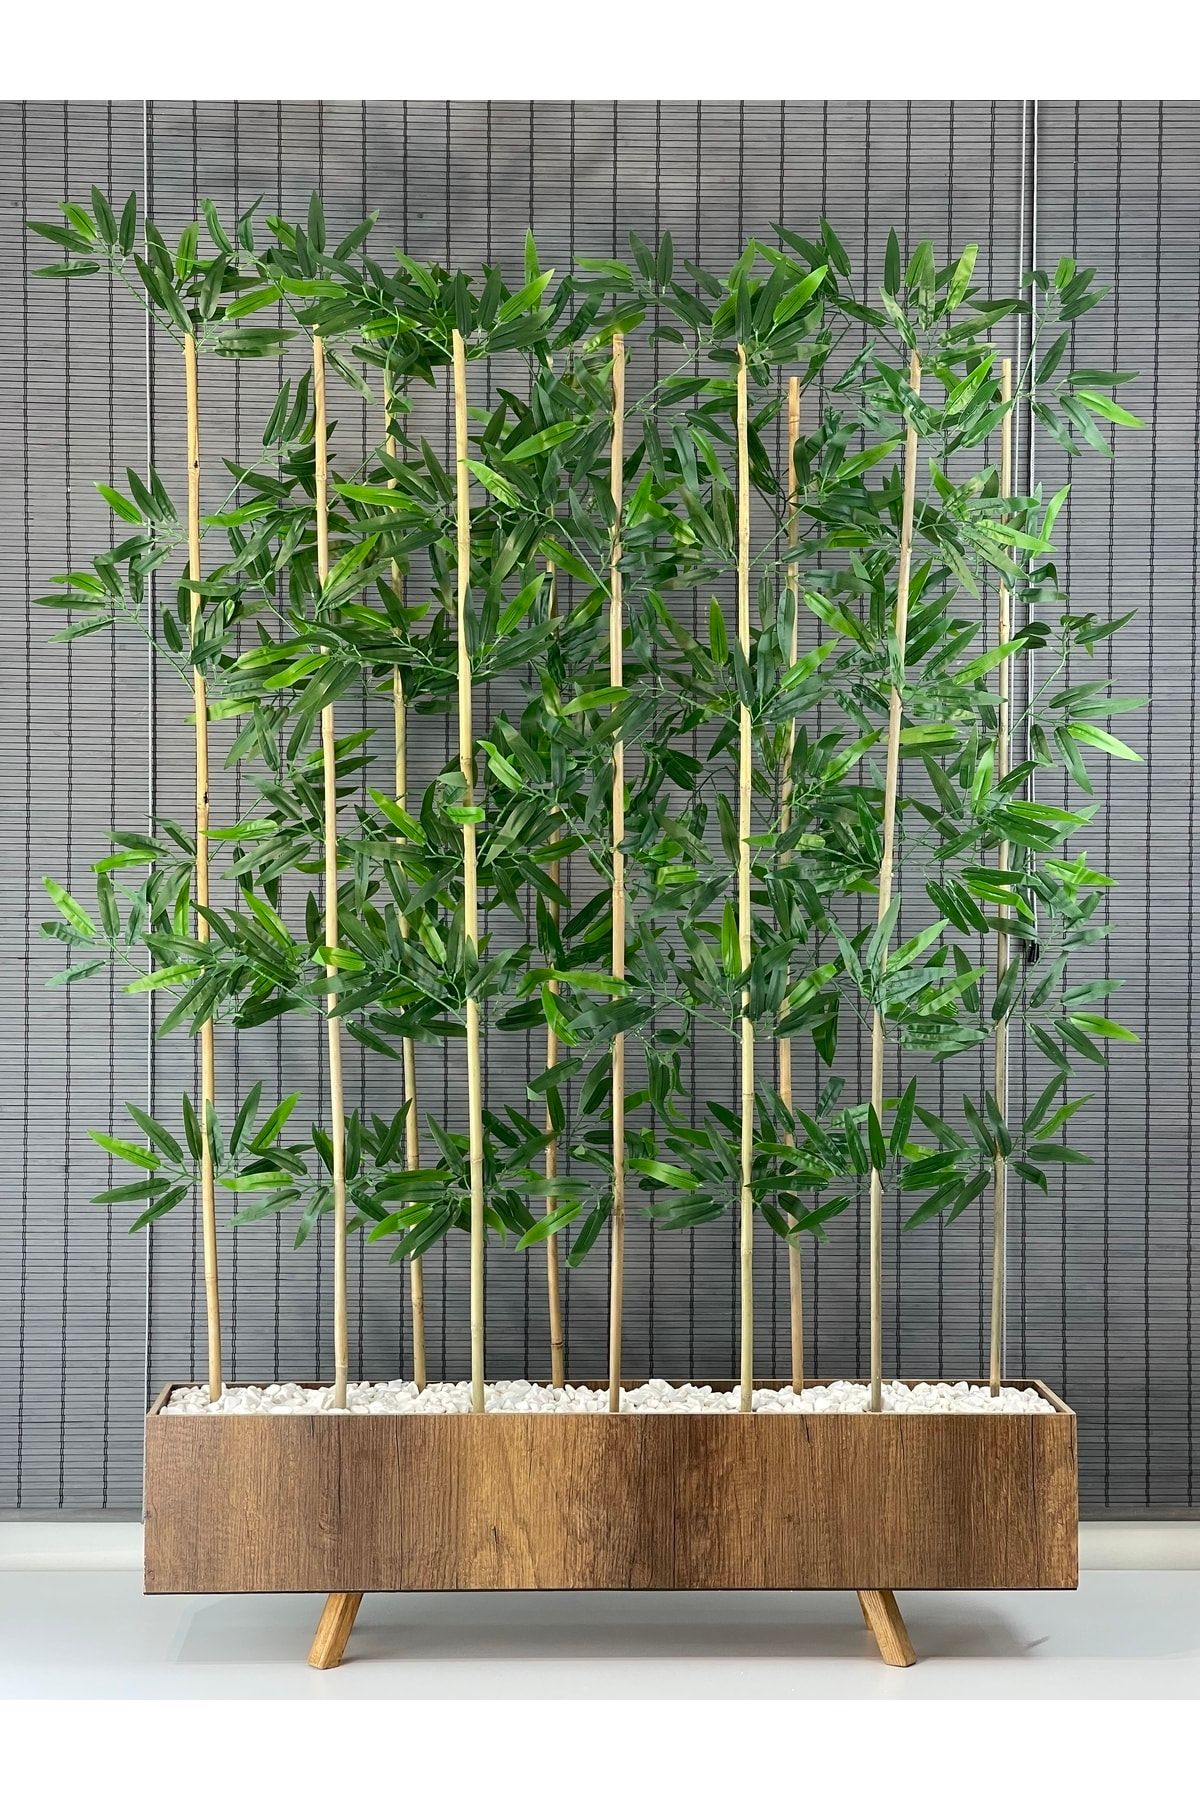 Bahçem Ahşap Ayaklı 1mt Saksılı 10 Bambu Gövdeli 180cm Dikdörtgen Yapay Yapraklı Dekoratif Bambu Seperatör